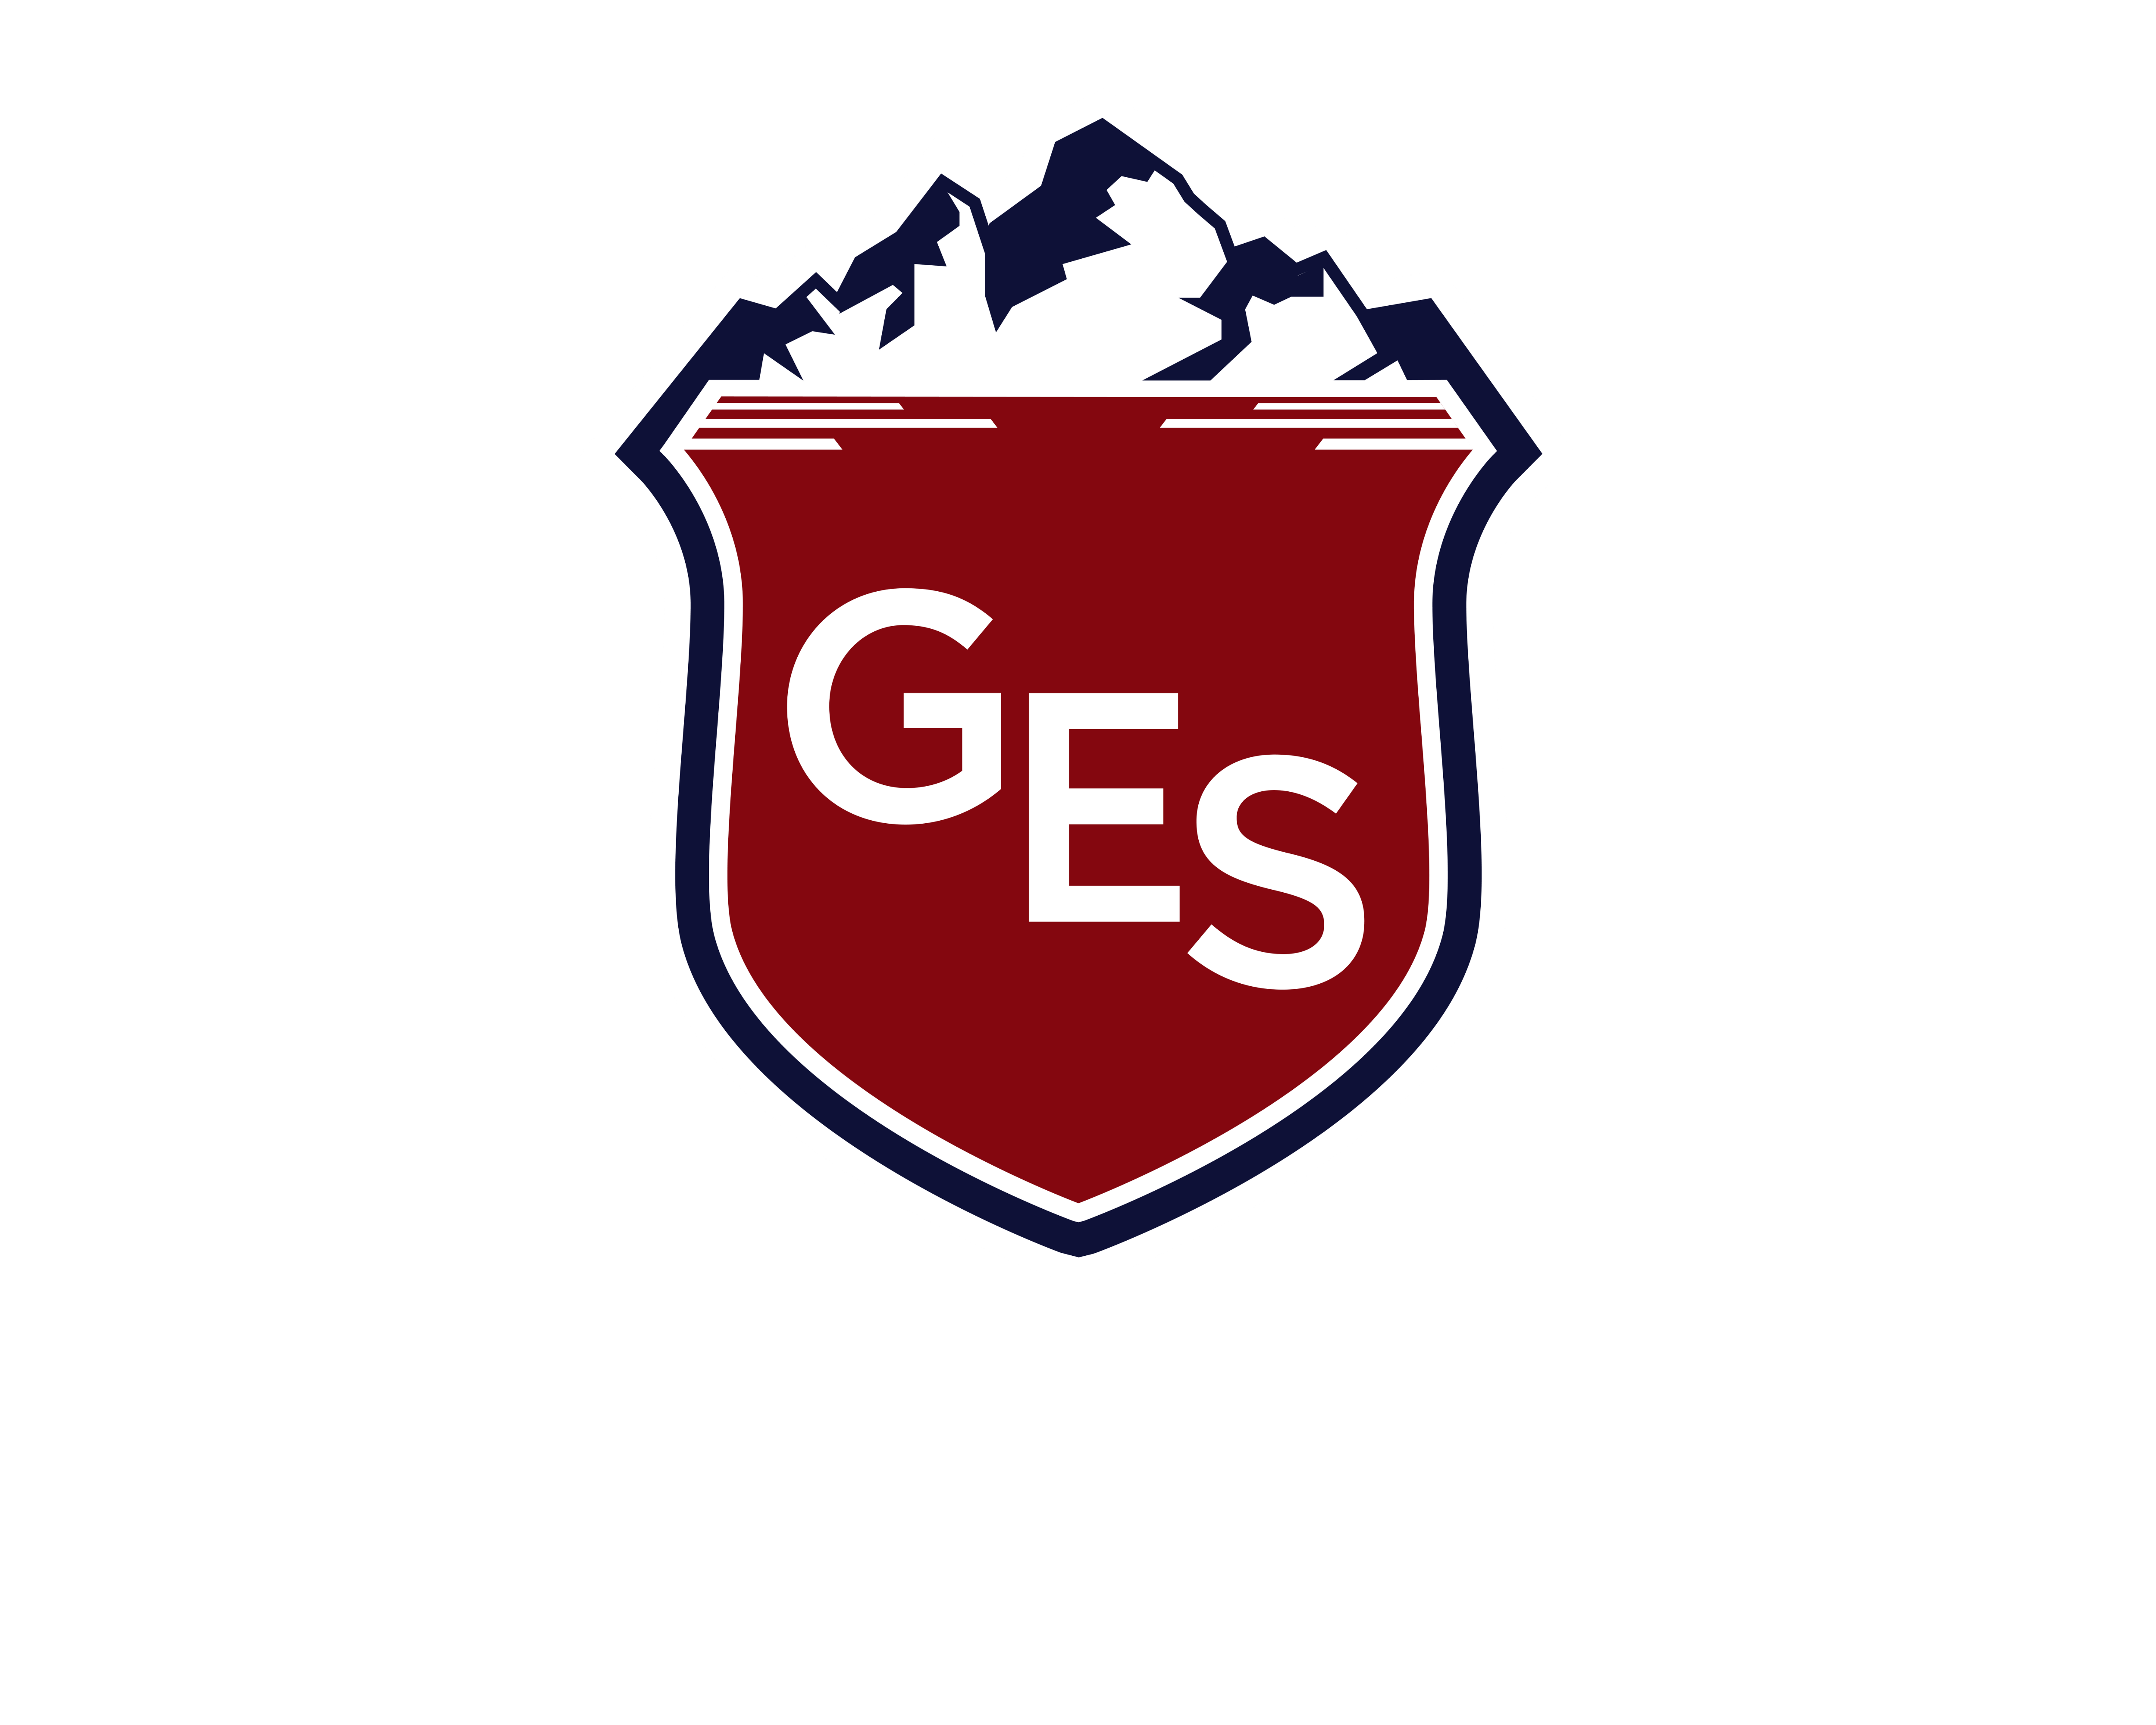 Geneva English school logo